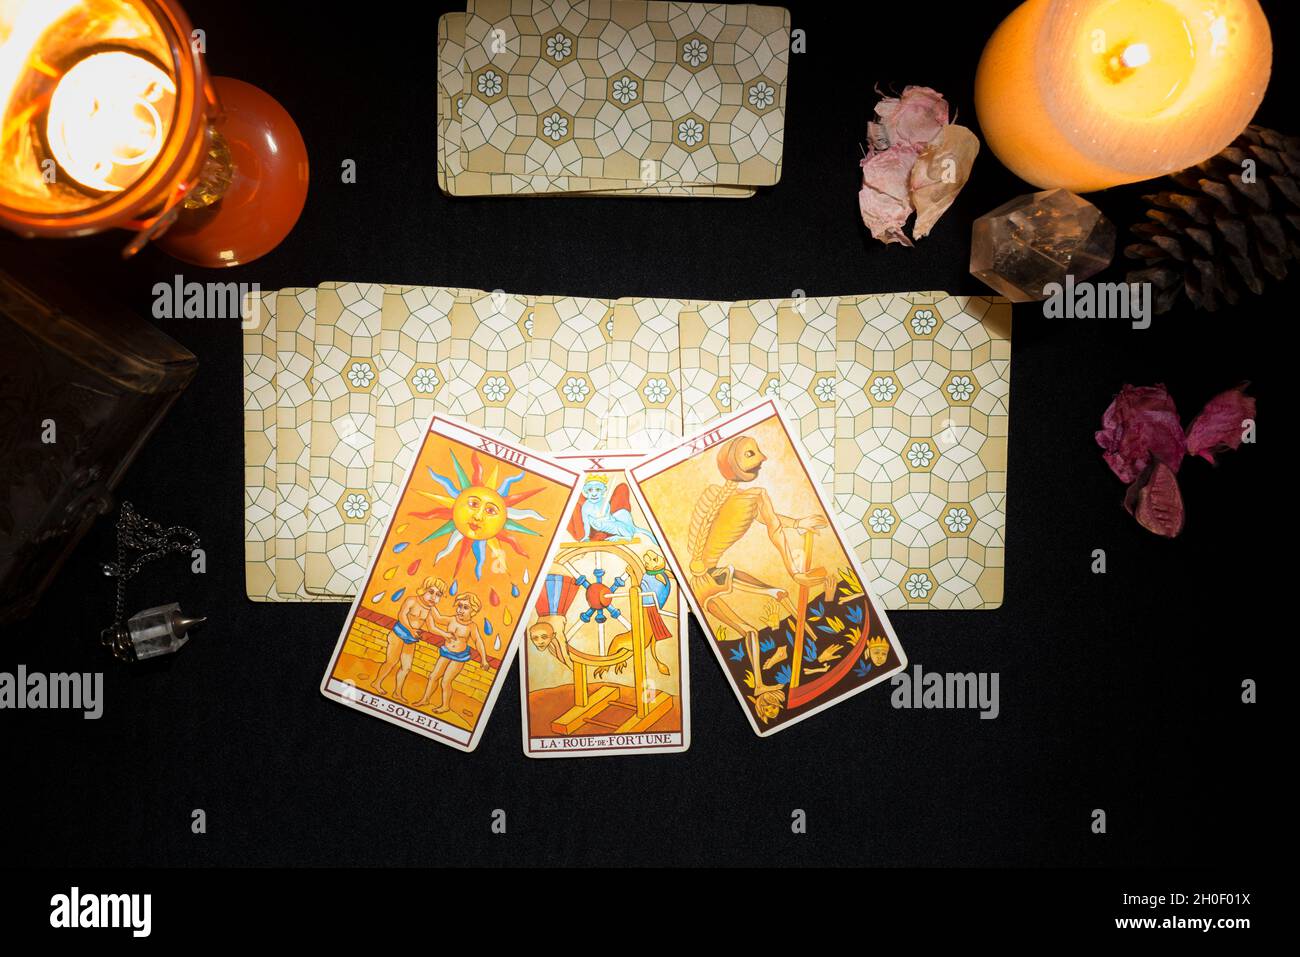 La muerte, el sol y las cartas de la ruleta de la fortuna en un conjunto de  cartas boca abajo. Concepto de una sesión de adivinación con tarjetas de  tarot. Vista desde